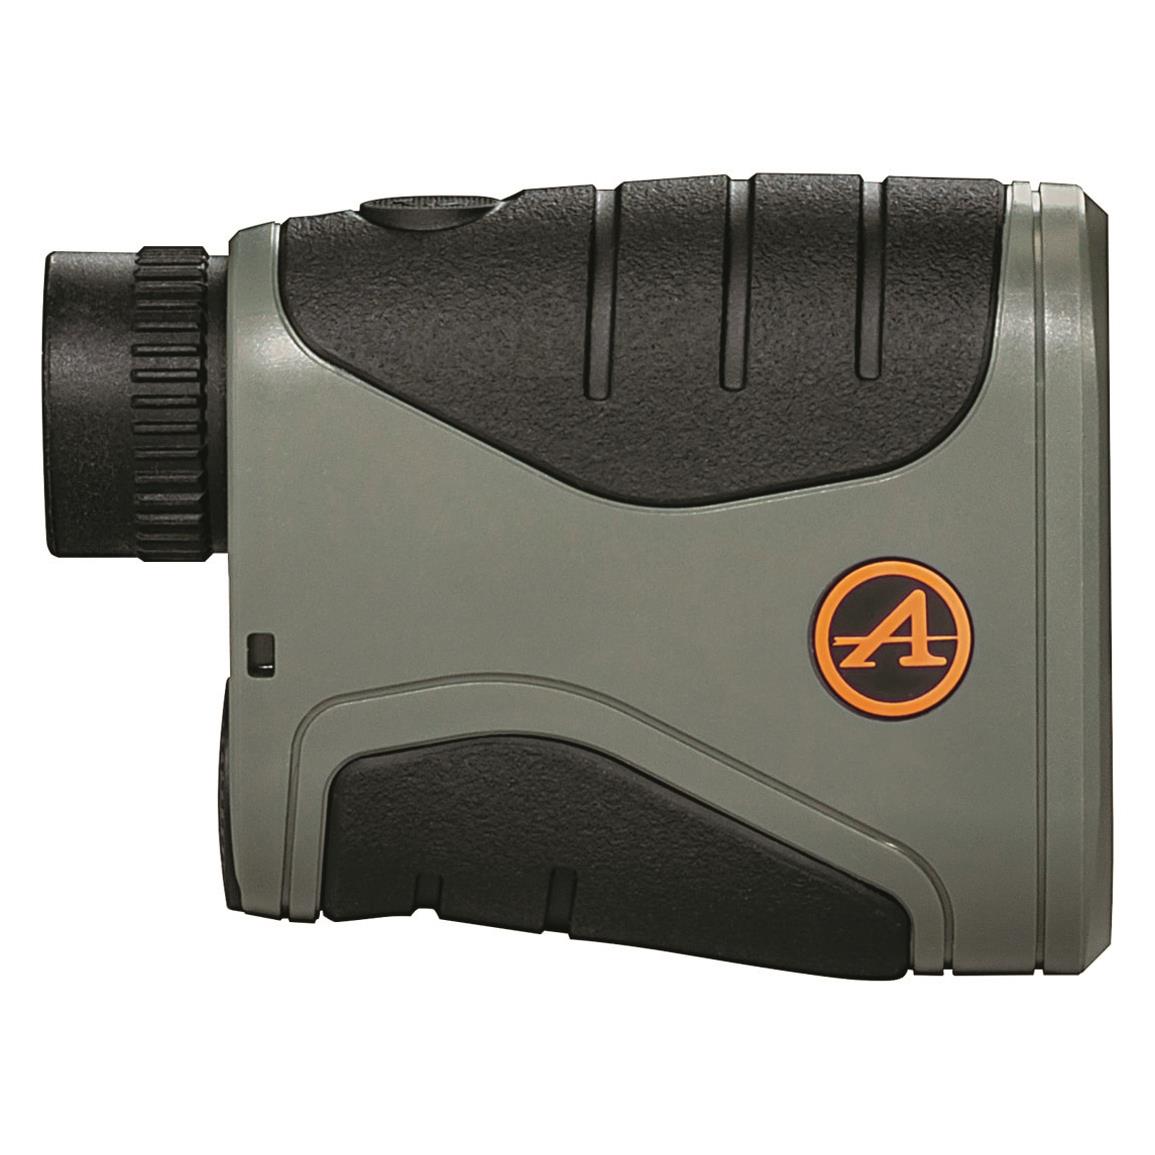 Athlon Midas G2 1-mIle Laser Rangefinder